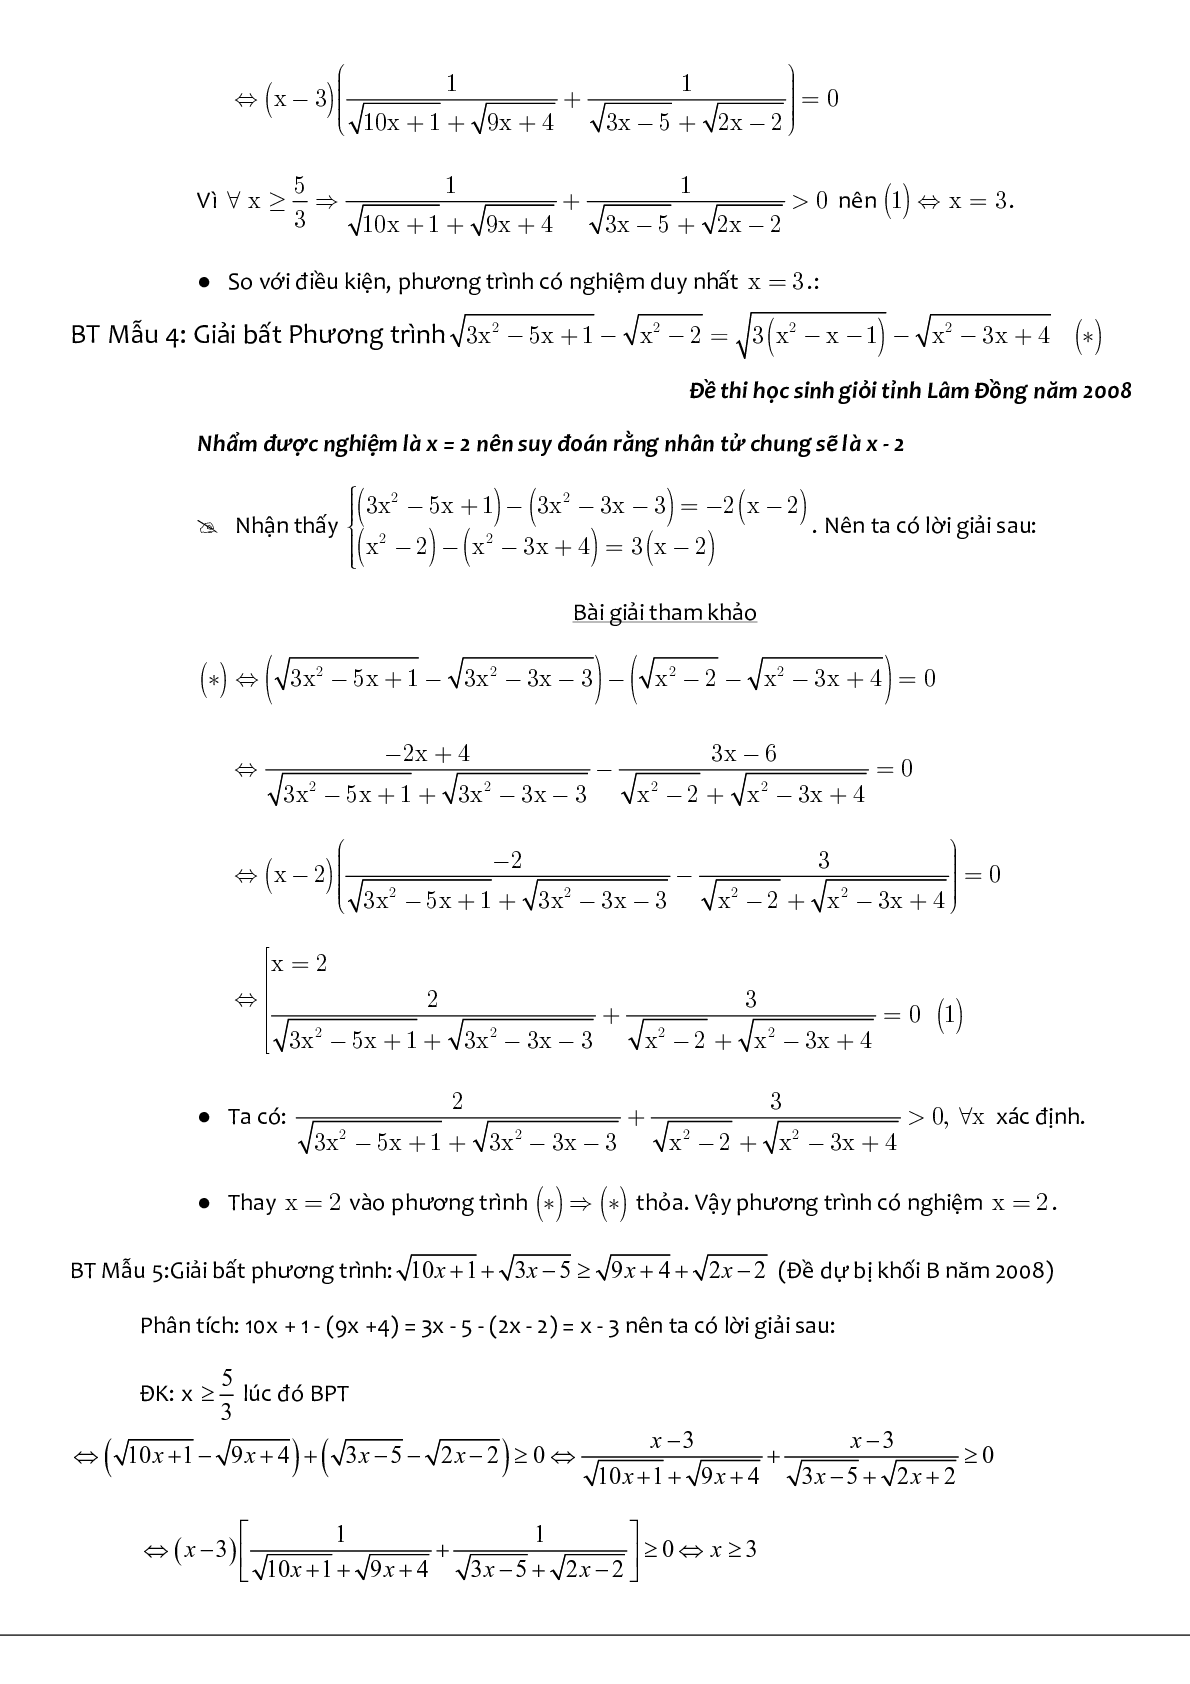 Kỹ thuật liên hợp giải phương trình chứa căn (trang 4)